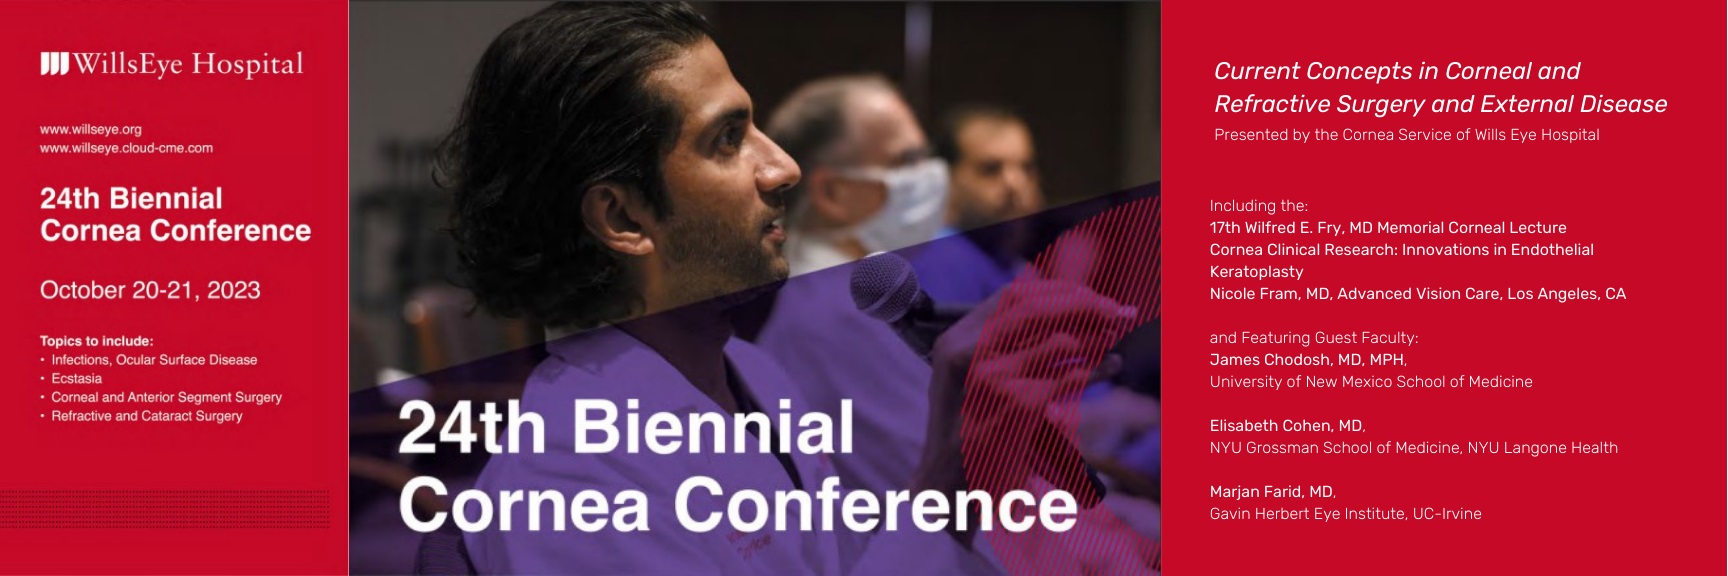 Biennial Cornea Conference 2023